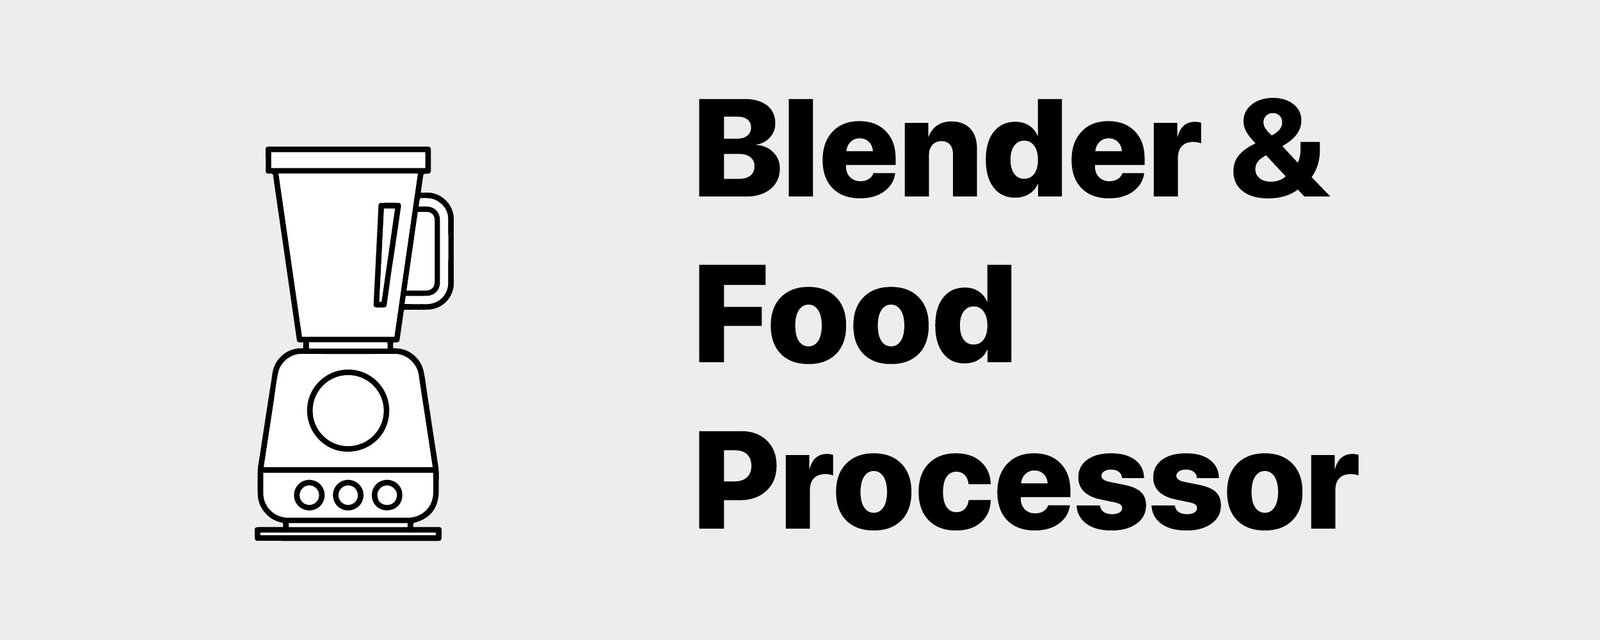 Blender & Food Processor